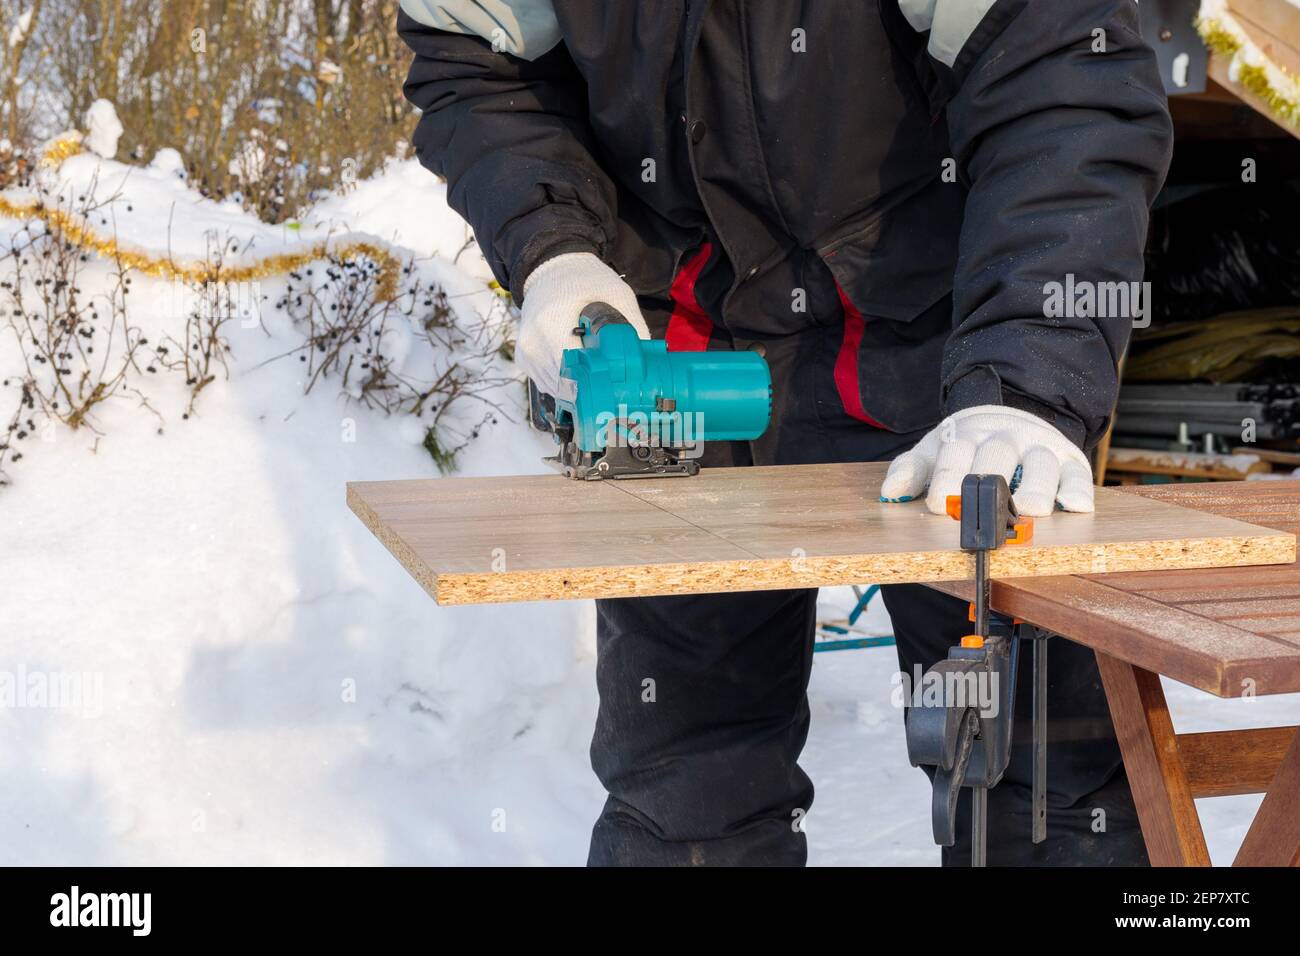 Ein männlicher Arbeiter schneidet eine Holzplatte, die mit Klammern an einer Werkbank befestigt ist, mit einer kreisförmigen Scheibe auf einer Batterie. Stockfoto